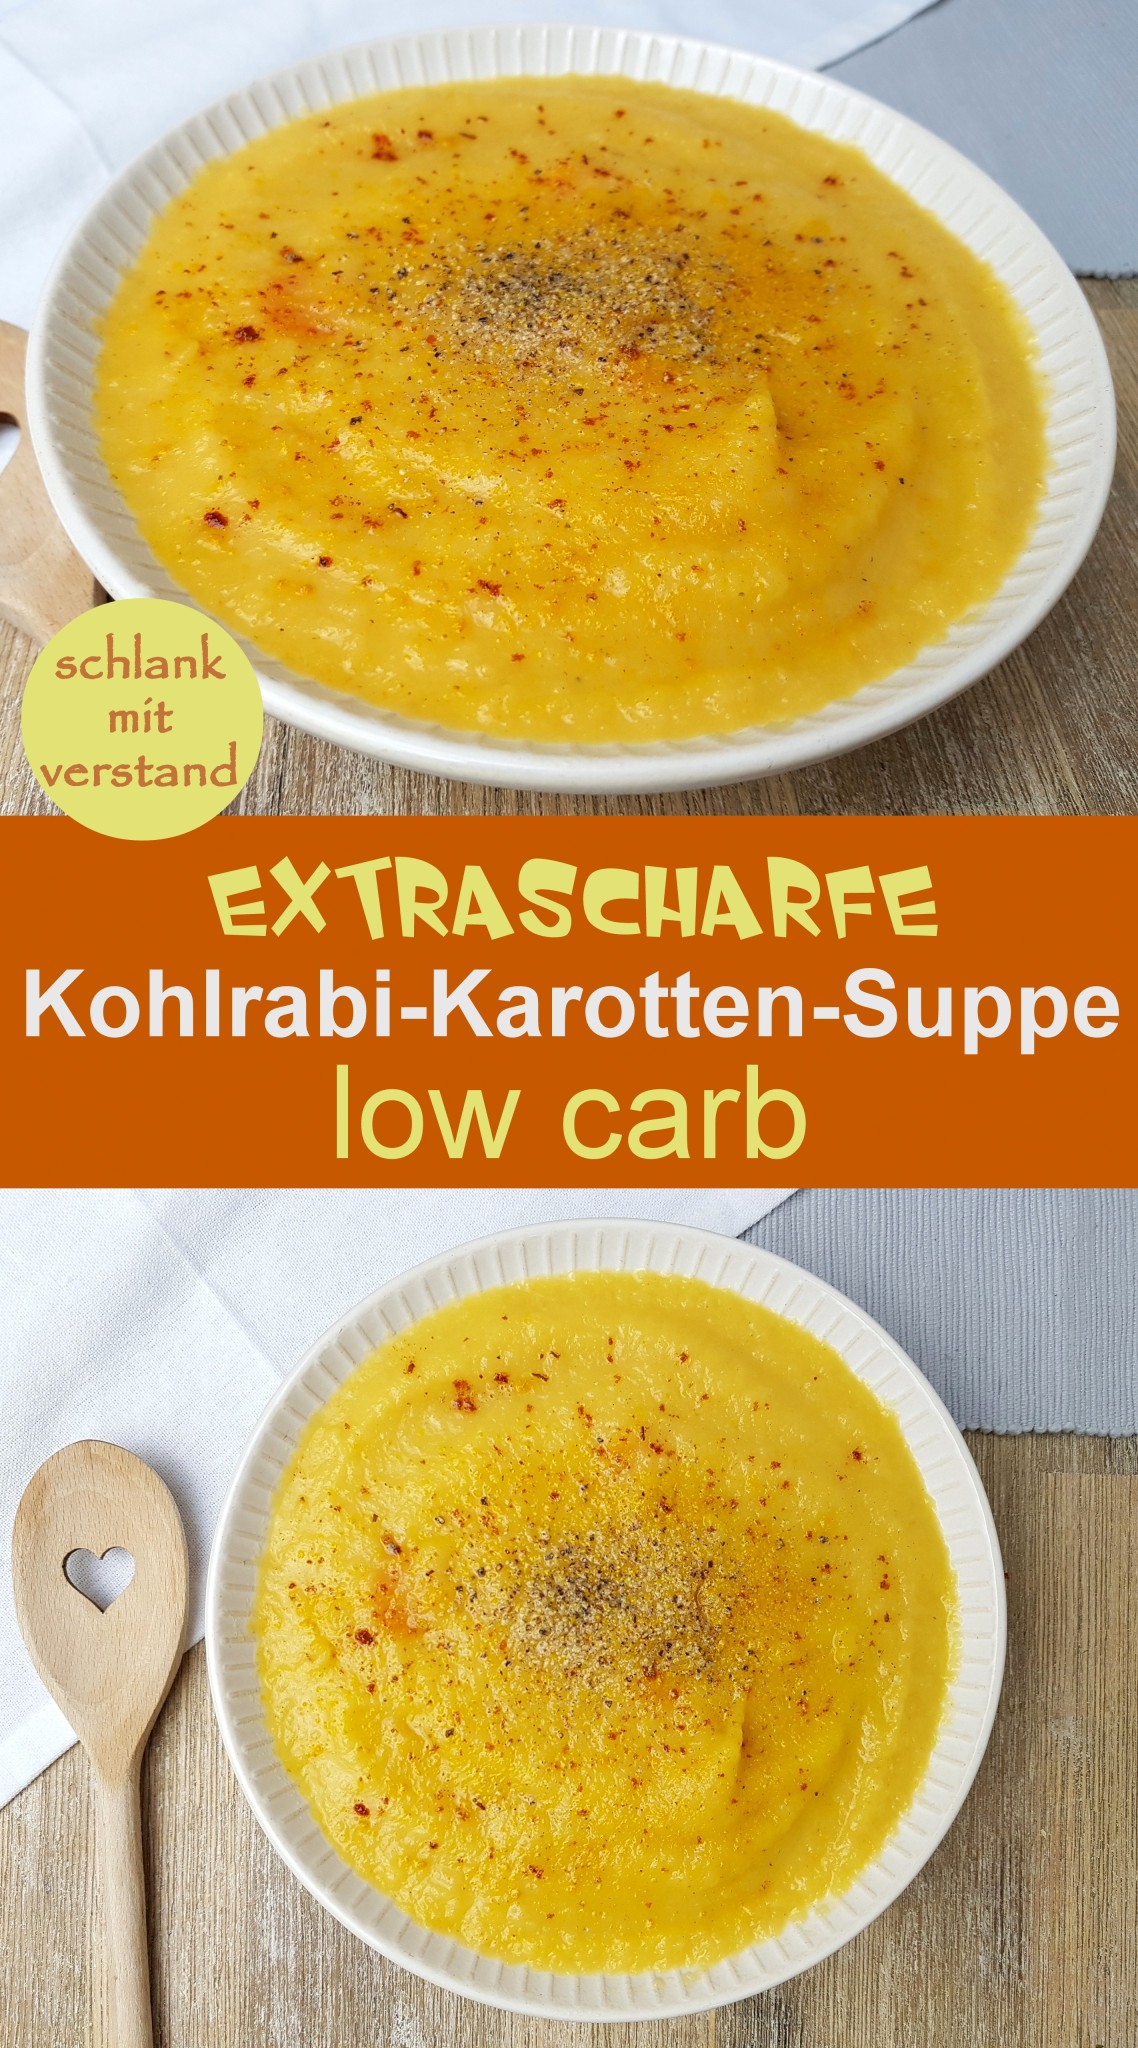 Kohlrabi-Karotten-Suppe low carb